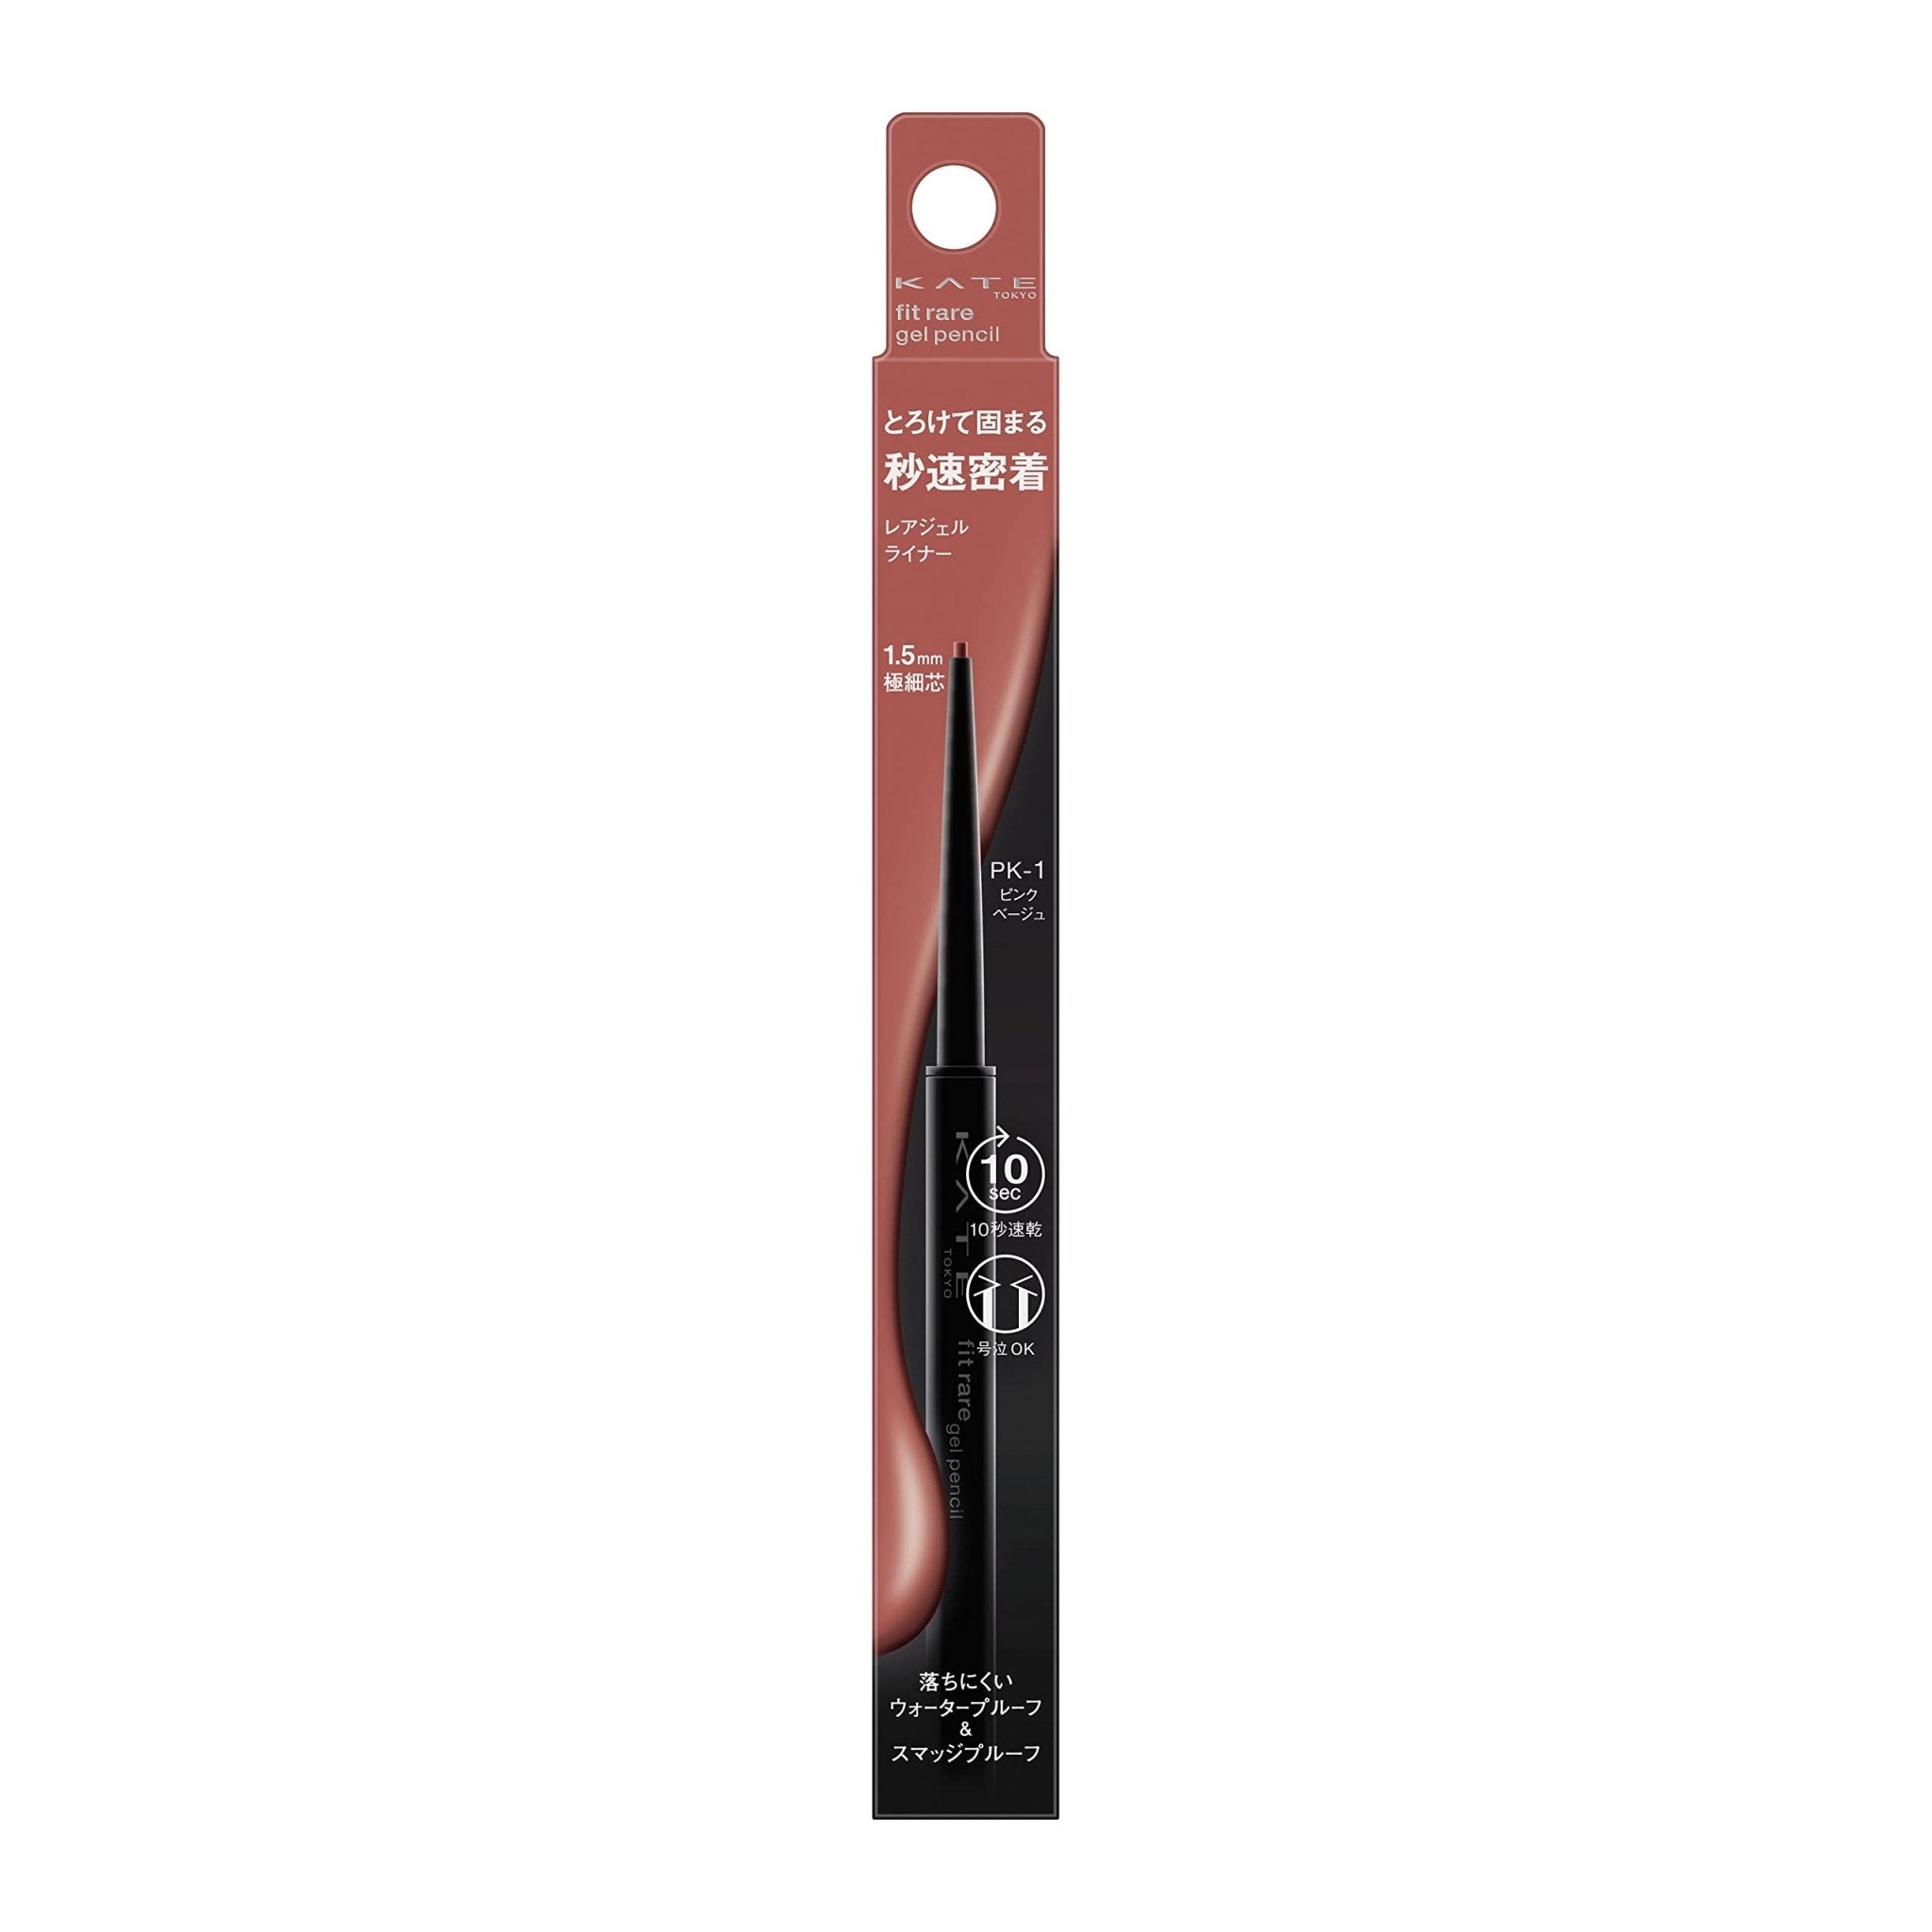 Kate Rare Fit Gel Pencil N Pk - 1 - Premium Eyeliner by Kate